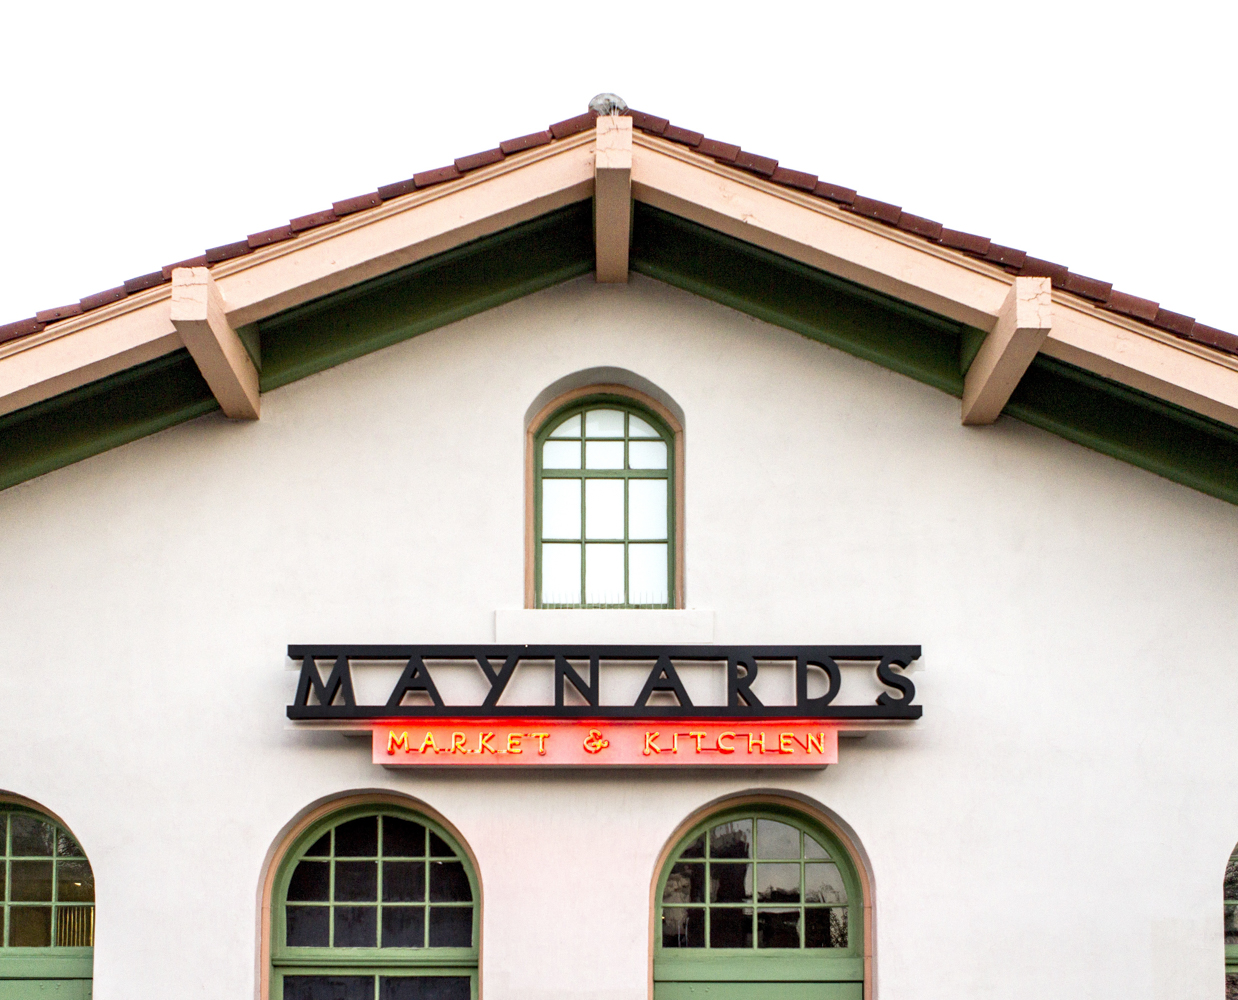 Maynards Market & Kitchen